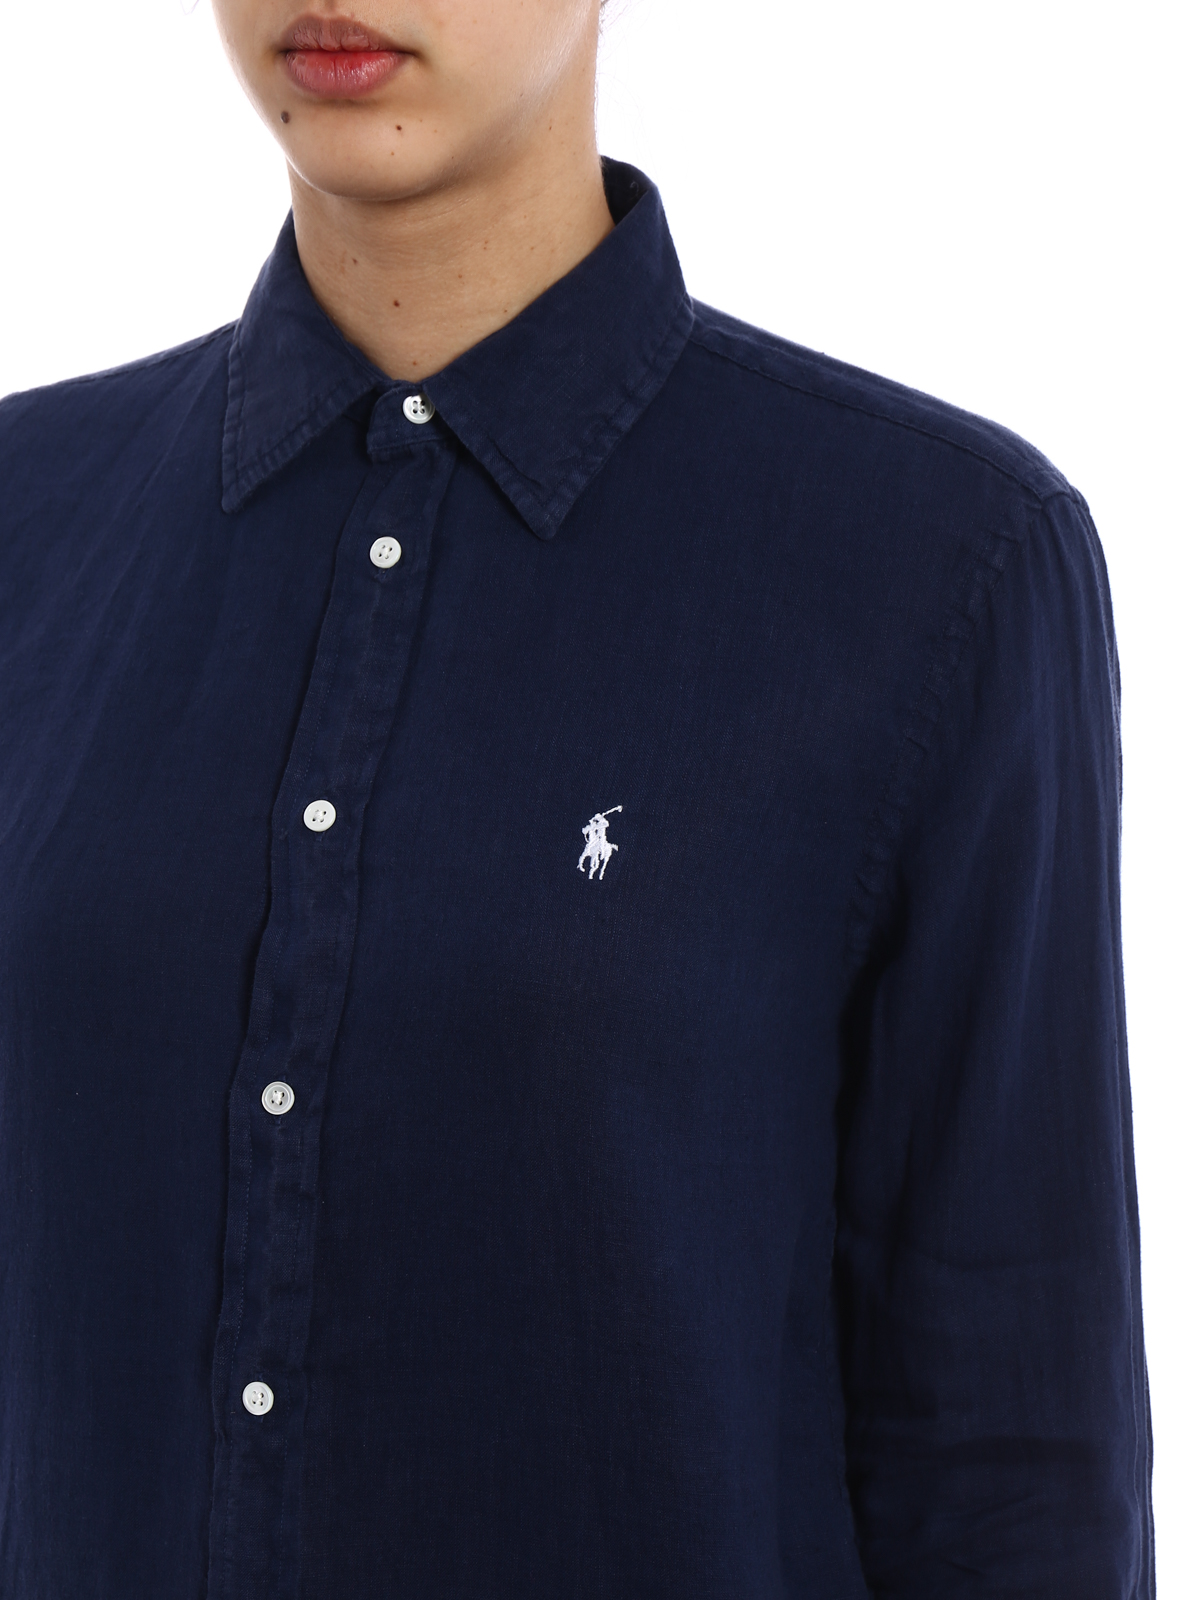 Polo Ralph Lauren - Navy linen shirt 